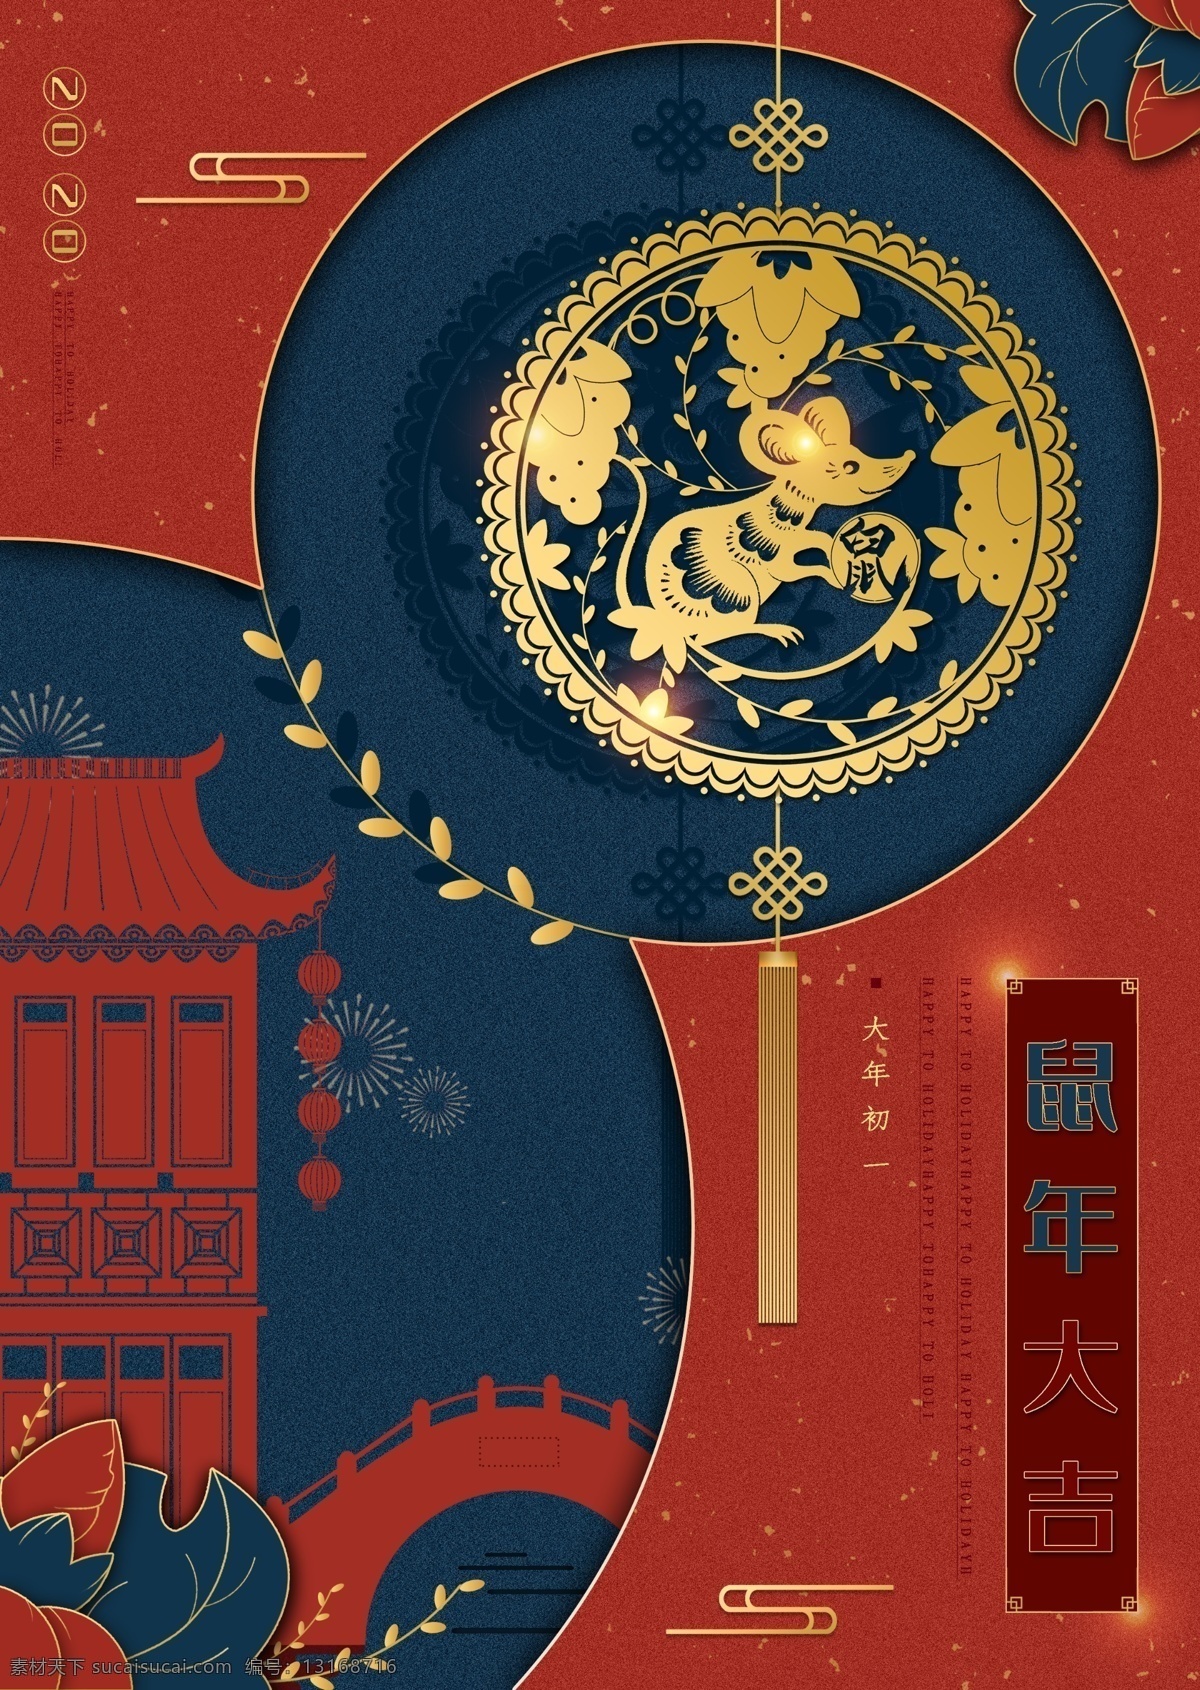 原创 精品 鼠年 剪纸 风 创意 海报 红色背景 新年 2020 大年初一 中国风 节日海报 蓝色